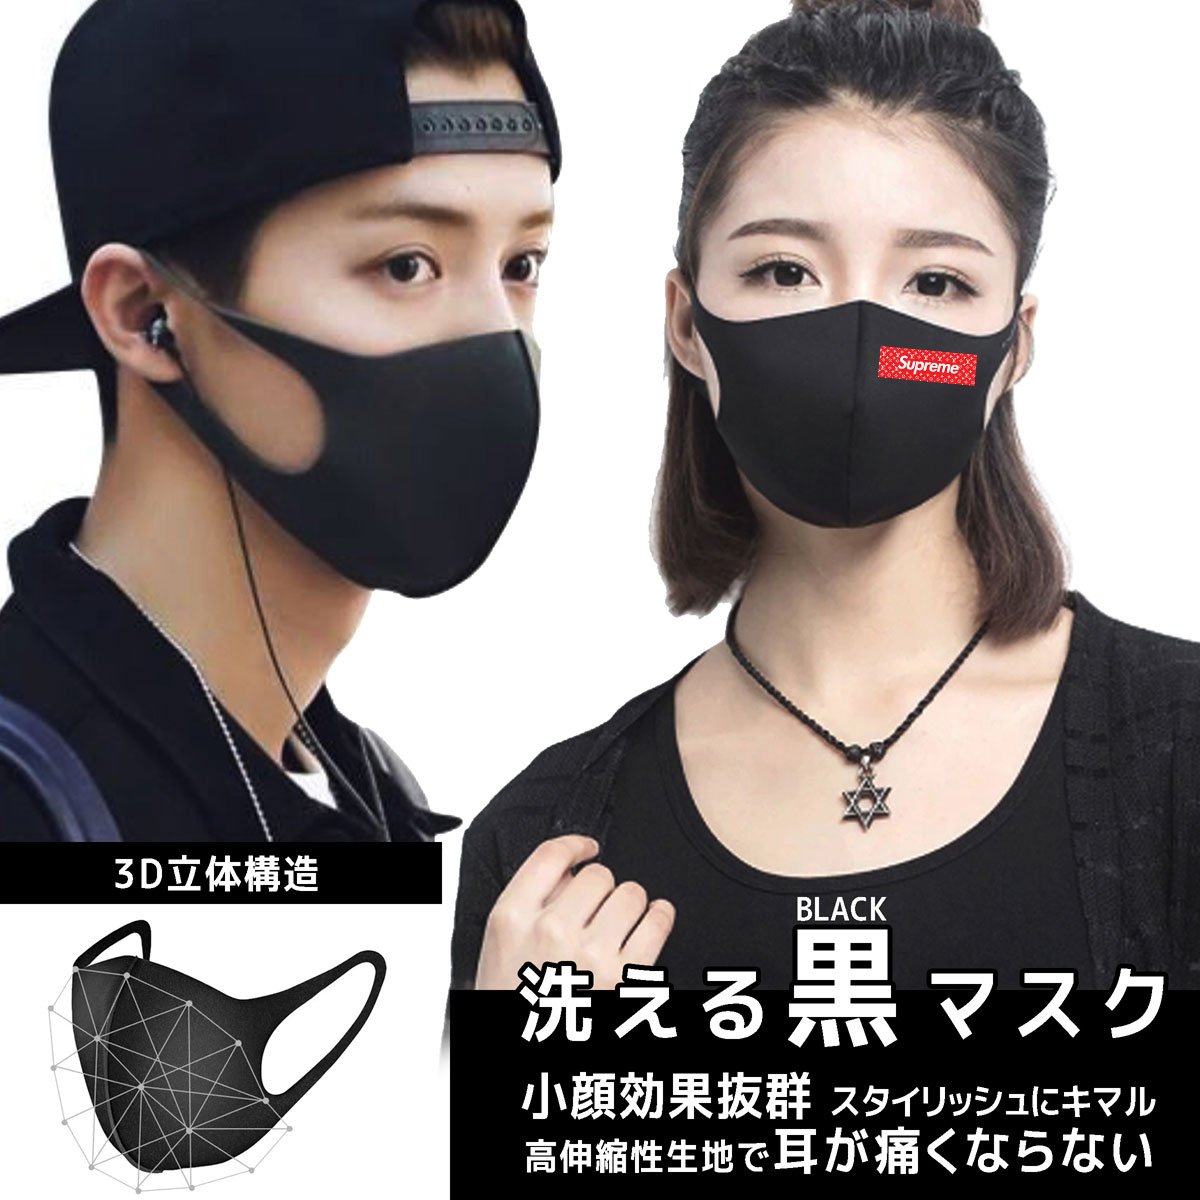 シュプリームマスク激安 夏用 涼しいマスク多機能 3D立体マスク